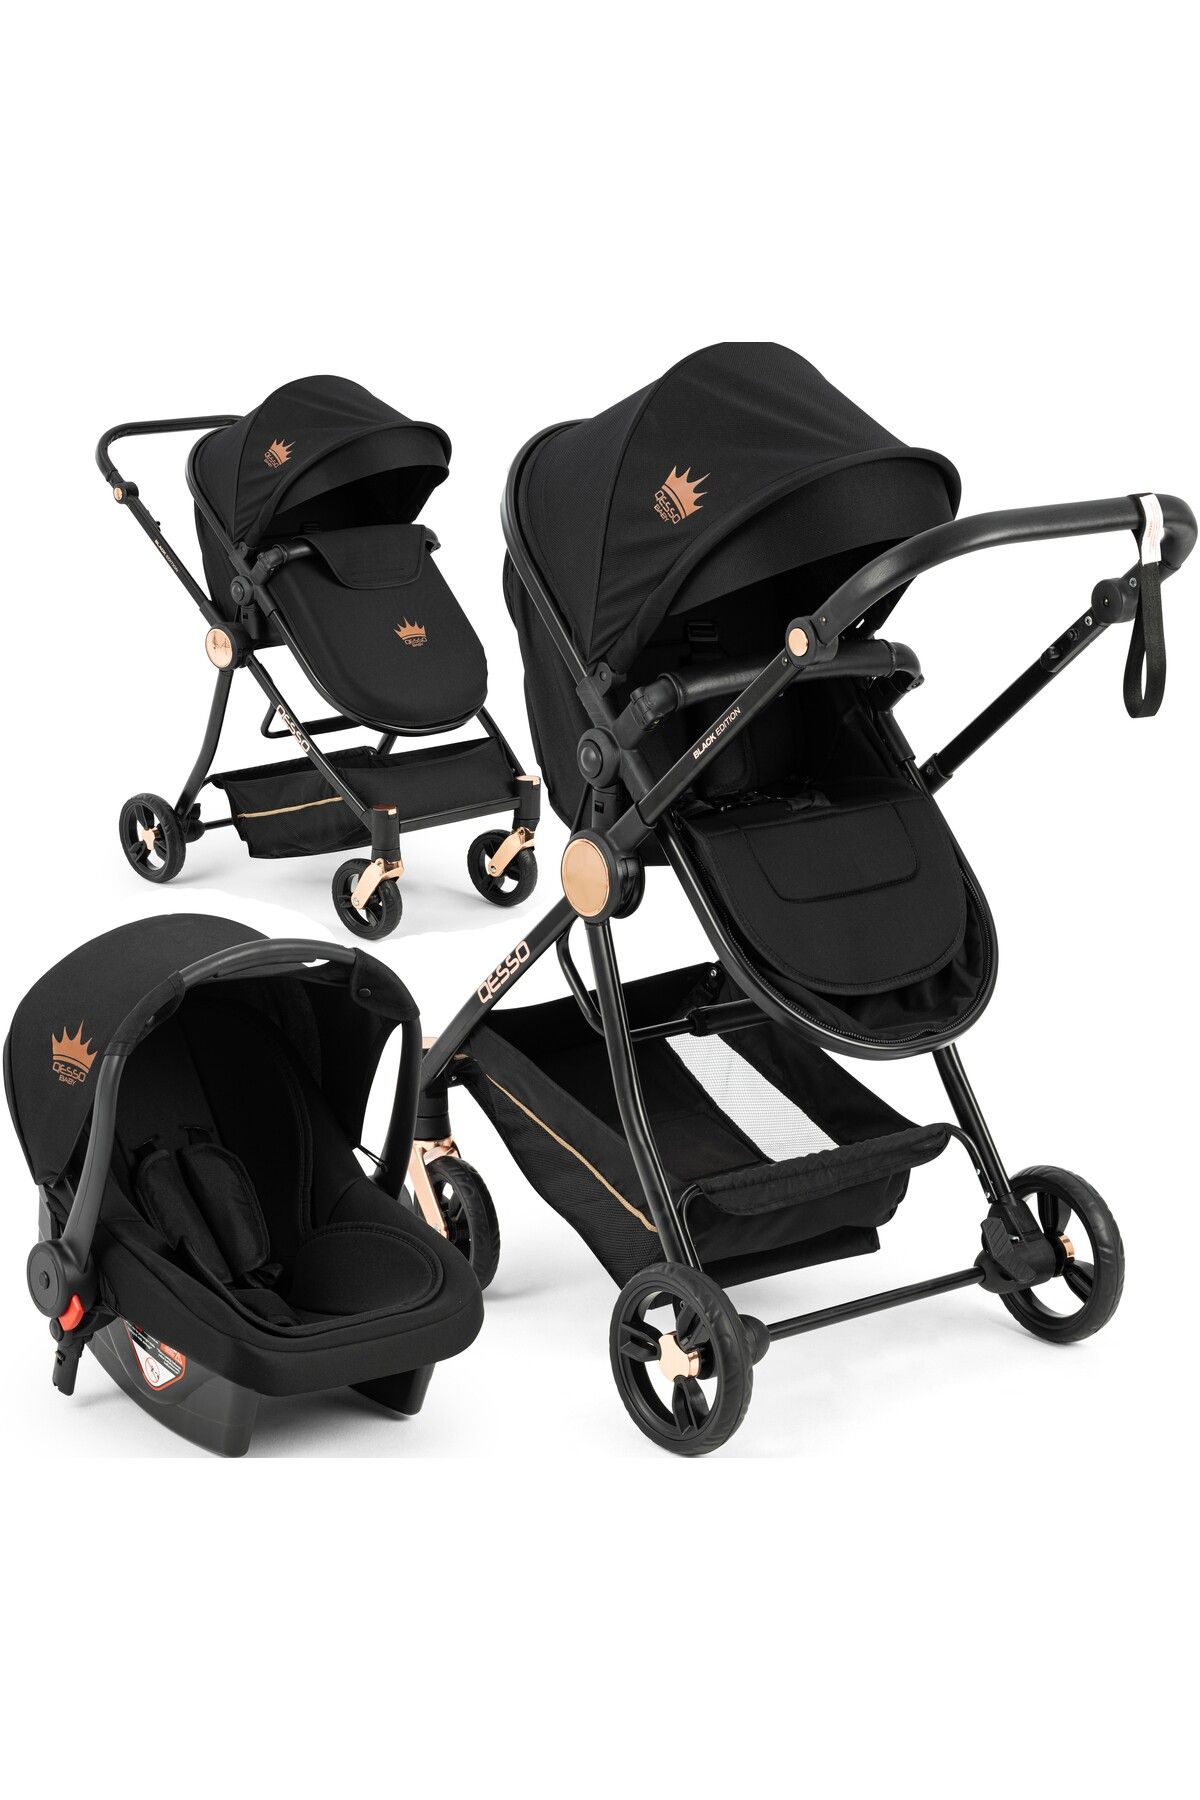 QESSO Baby Black Travel Sistem Bebek Arabası Seyahat Sistem Puset Özel Tasarım